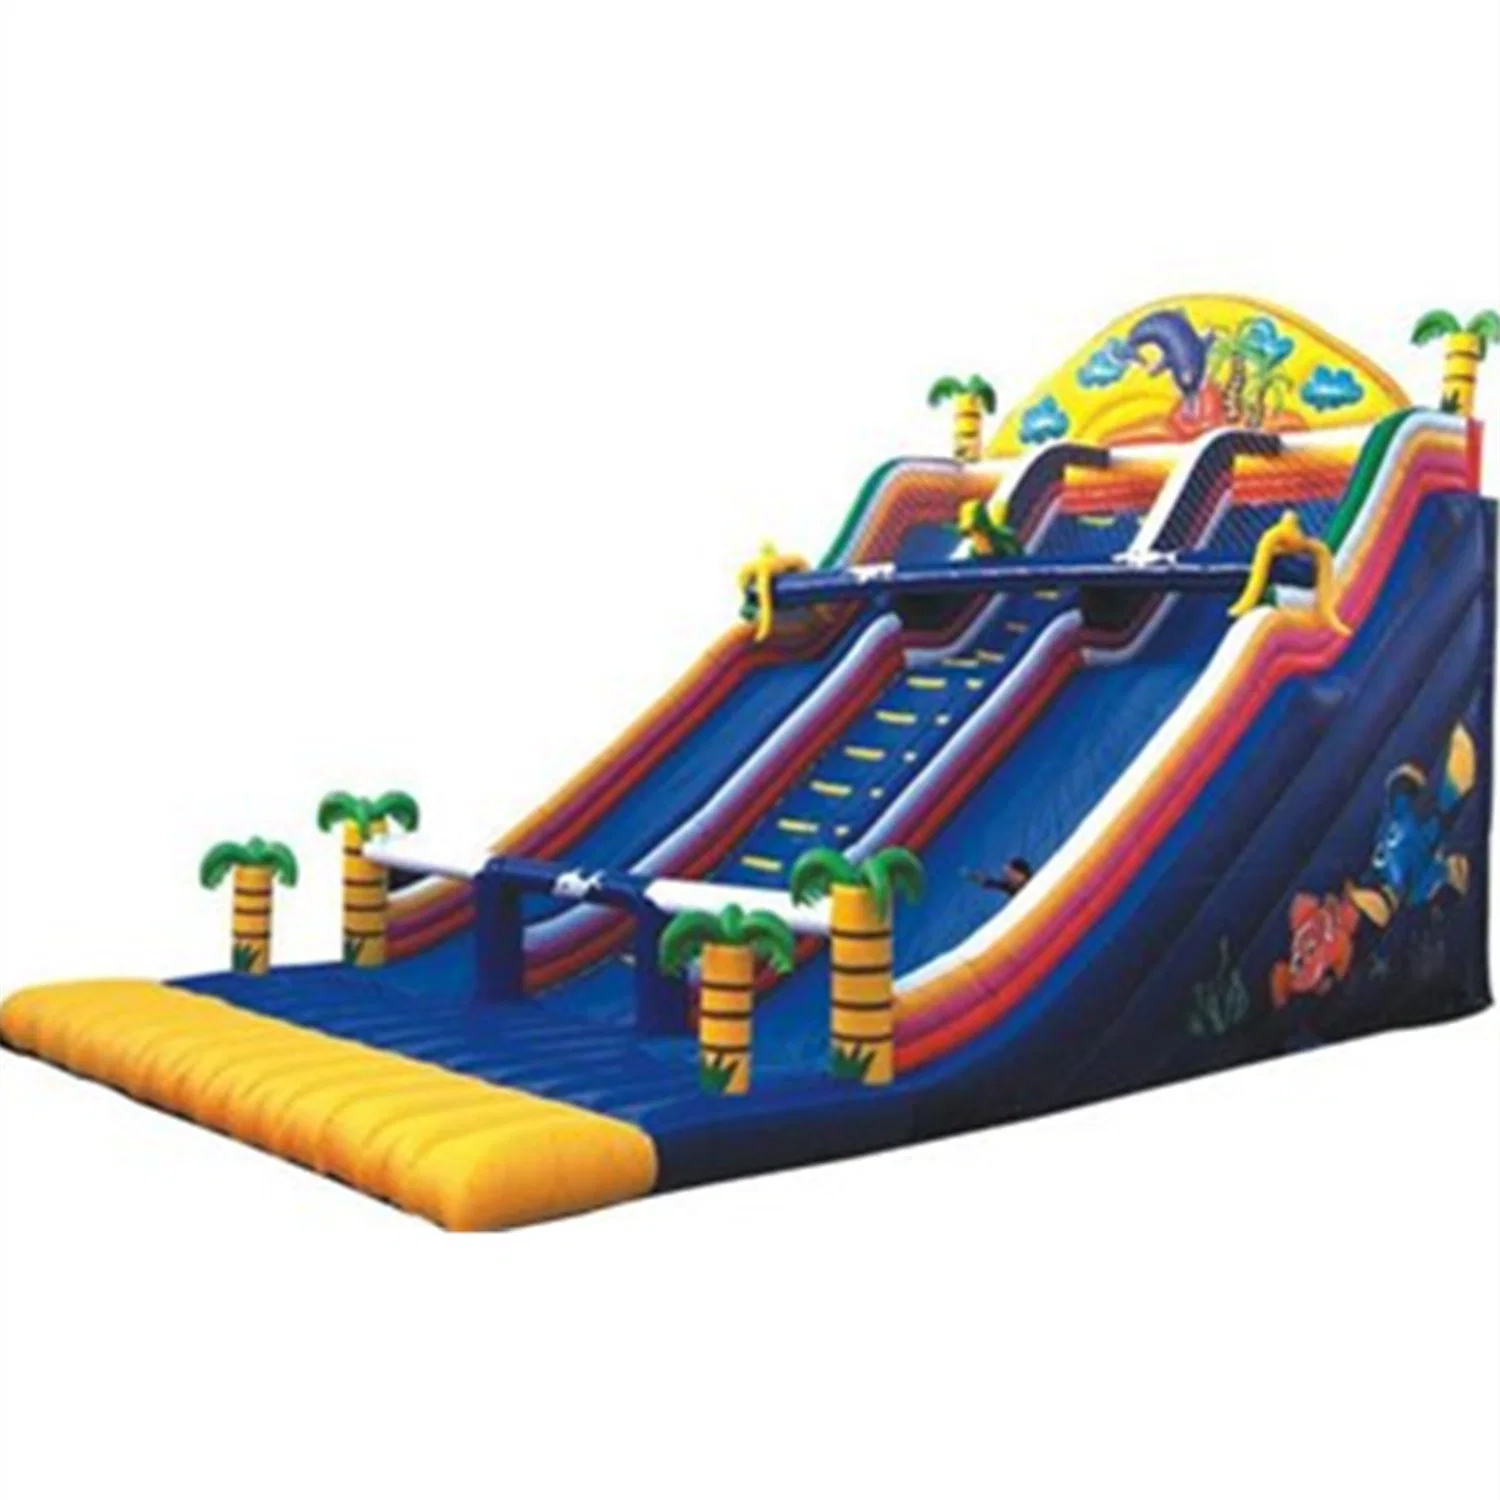 Equipo personalizado de parque de atracciones inflable Castle Toy Slide 71CB